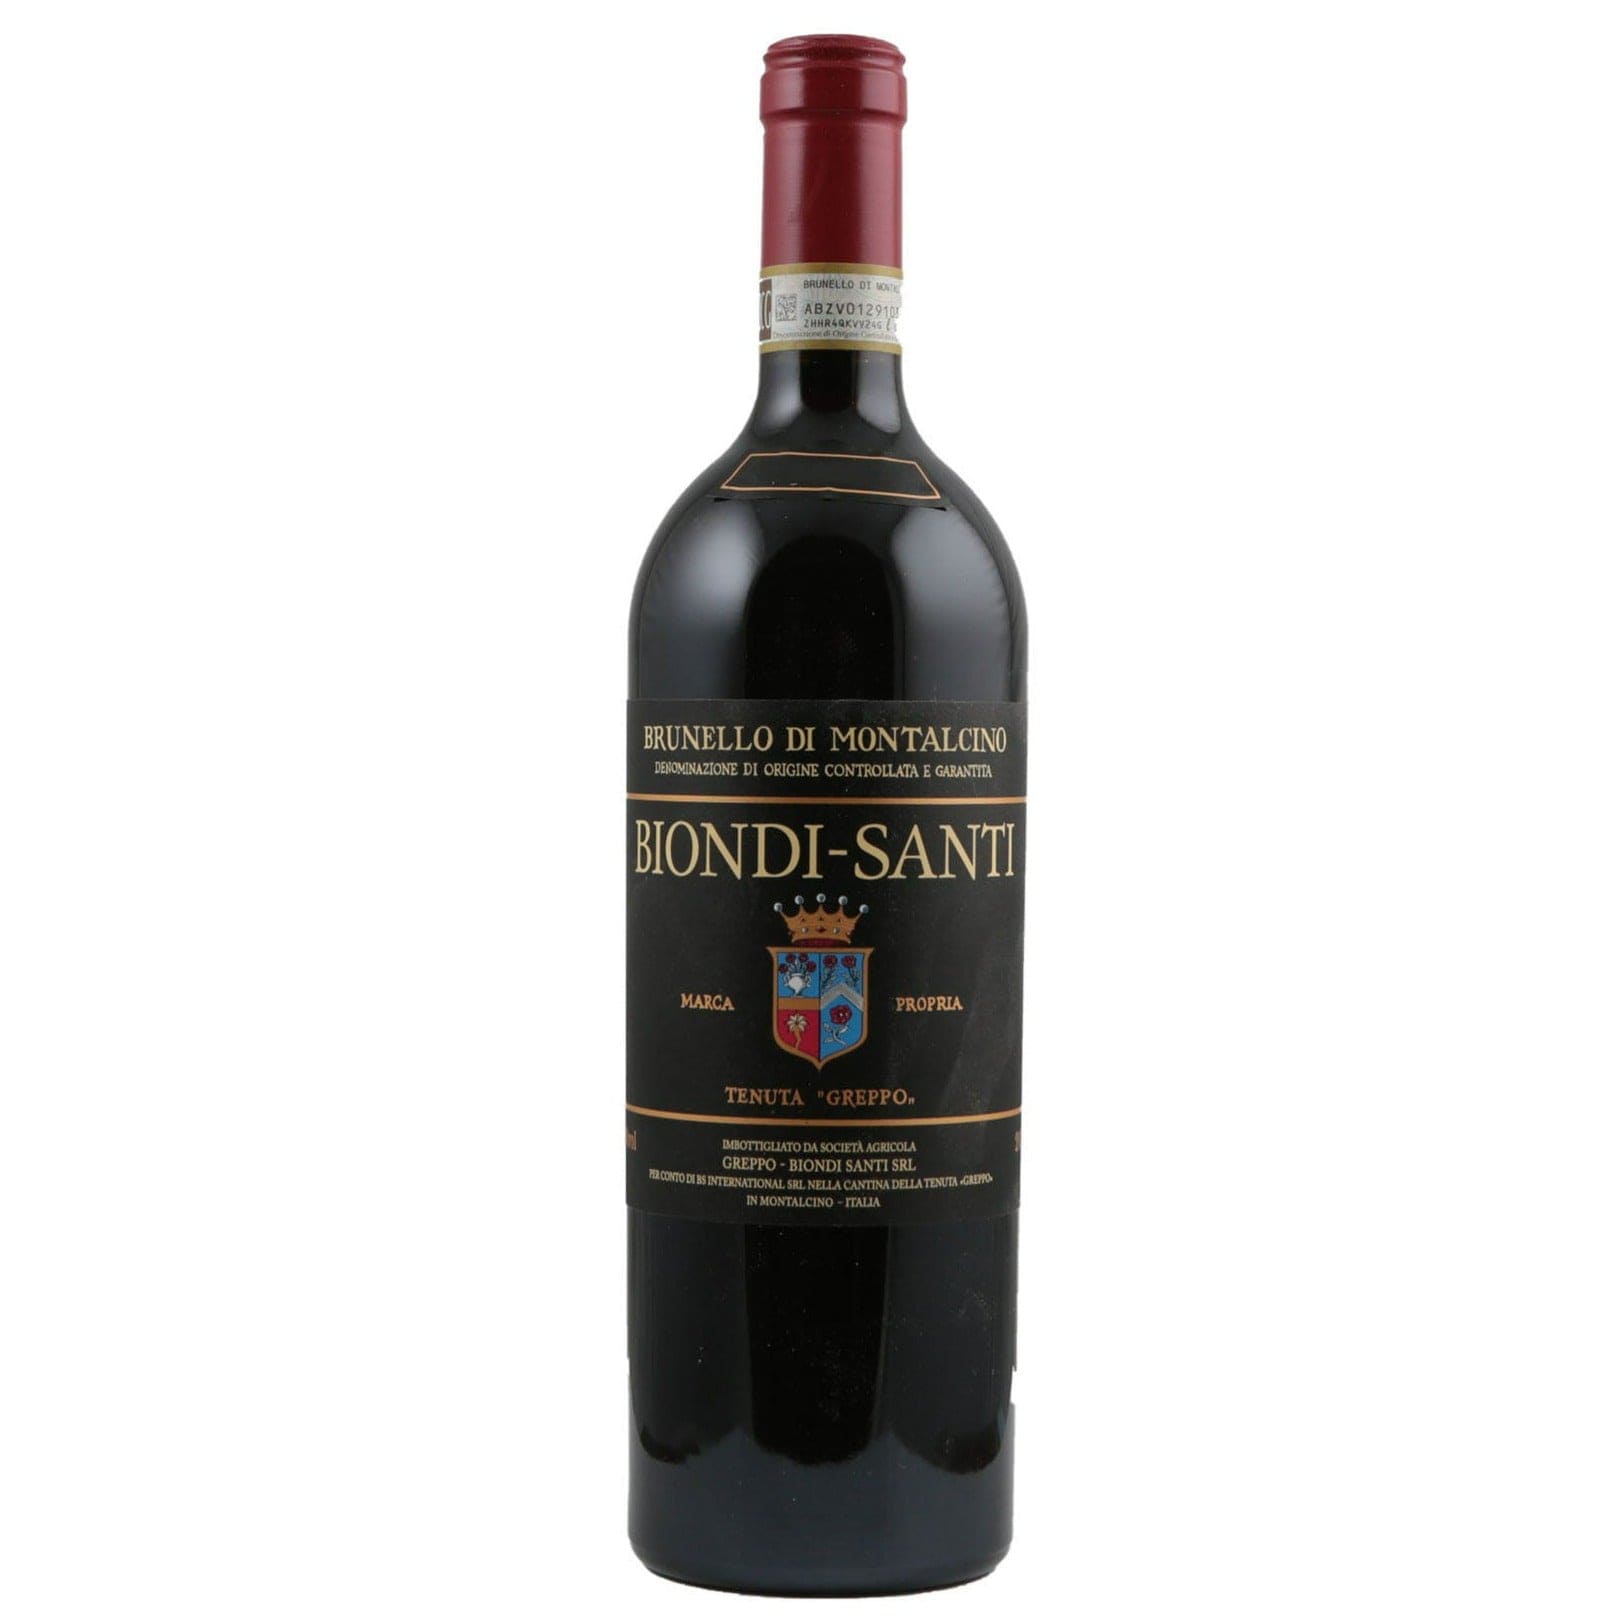 Single bottle of Red wine Biondi-Santi, Tenuta Greppo, Brunello di Montalcino, 2010 100% Sangiovese